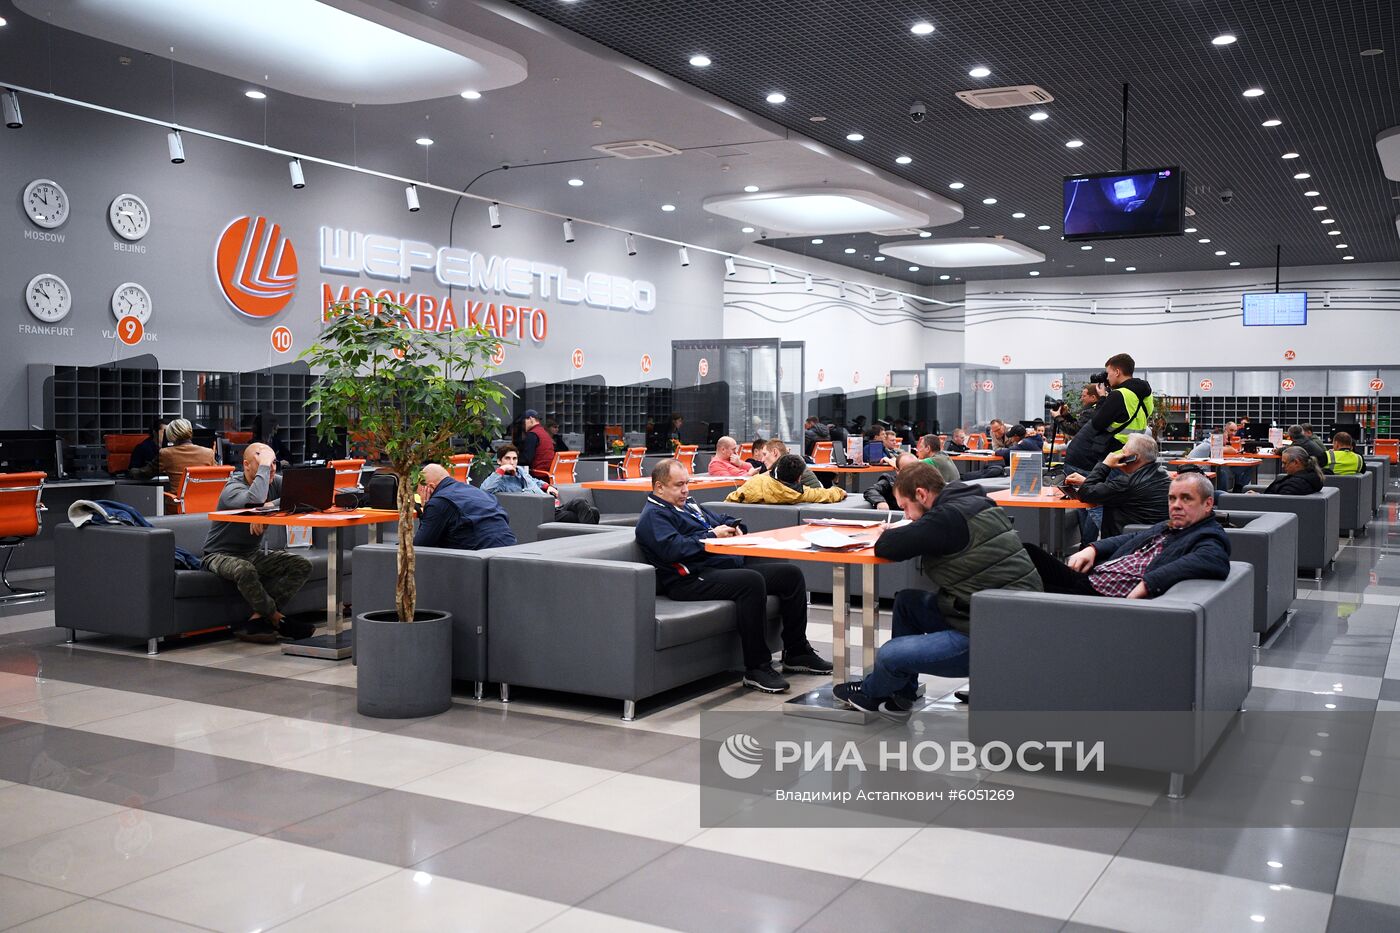 Грузовой терминал "Москва Карго"